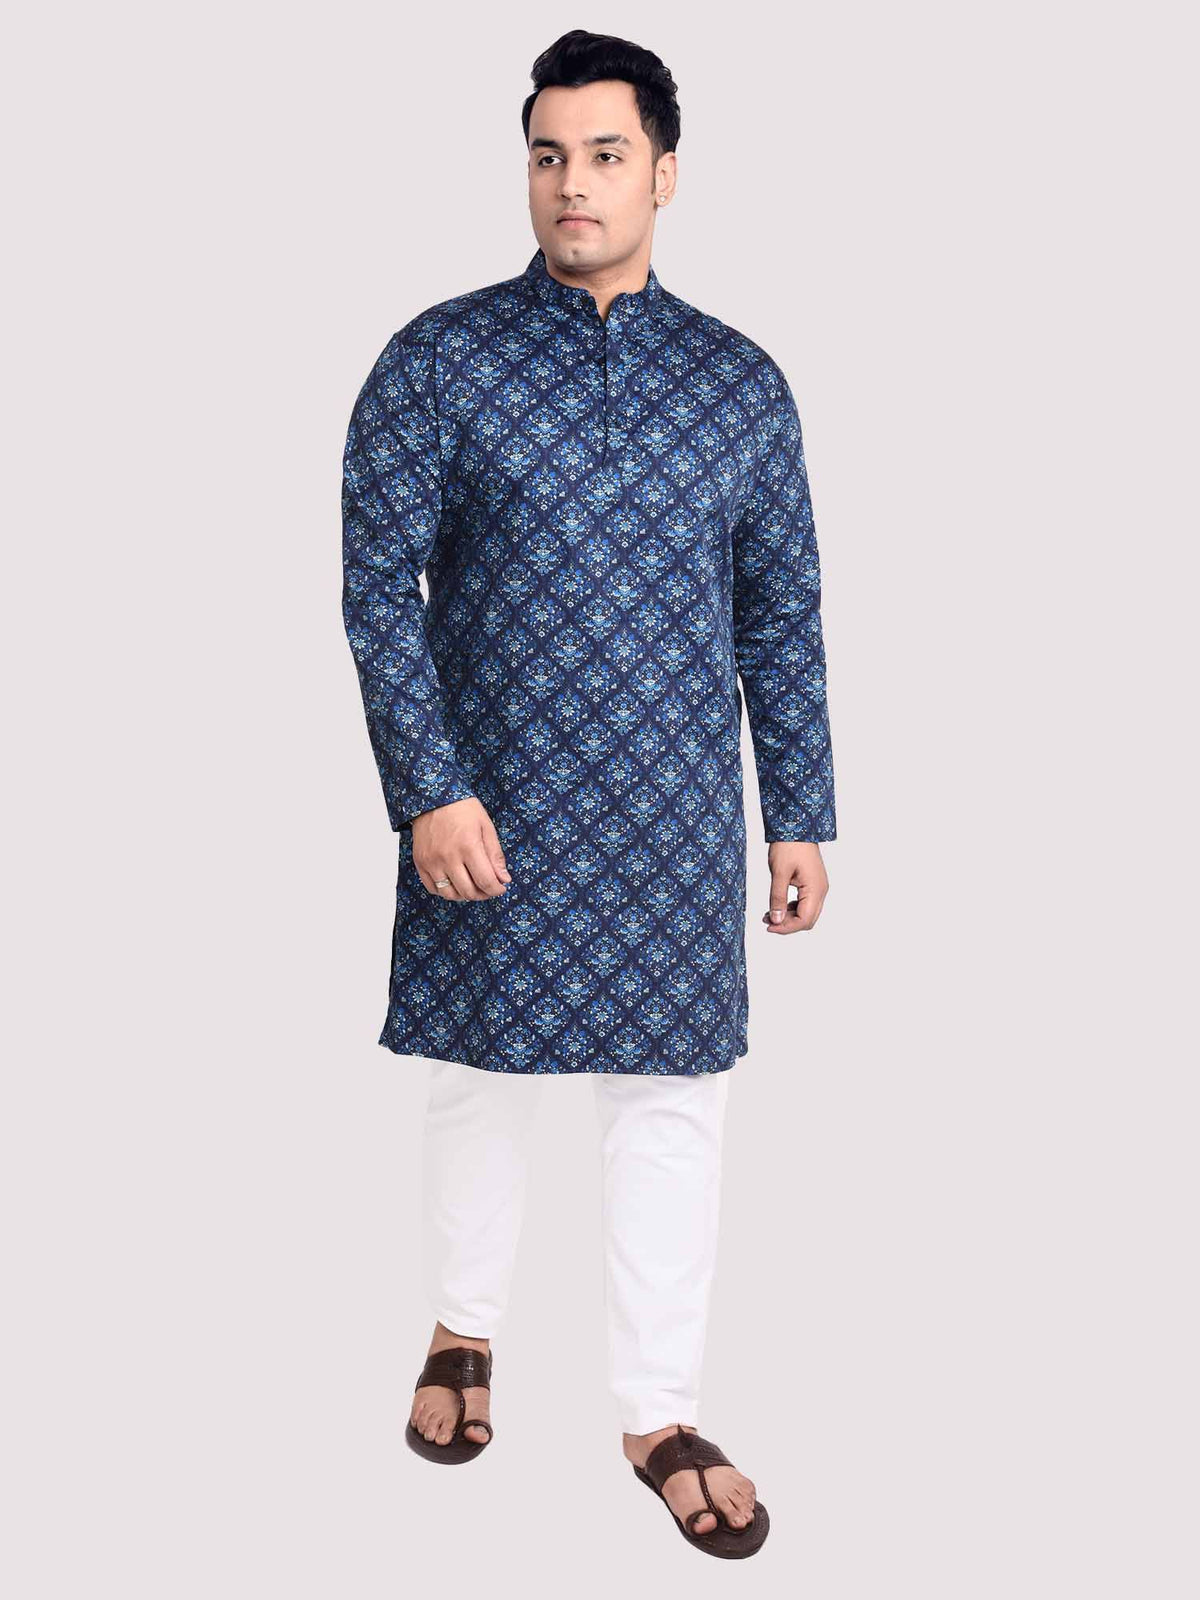 Sapphire Jaal Digital Printed Kurta Men's Plus Size - Guniaa Fashions